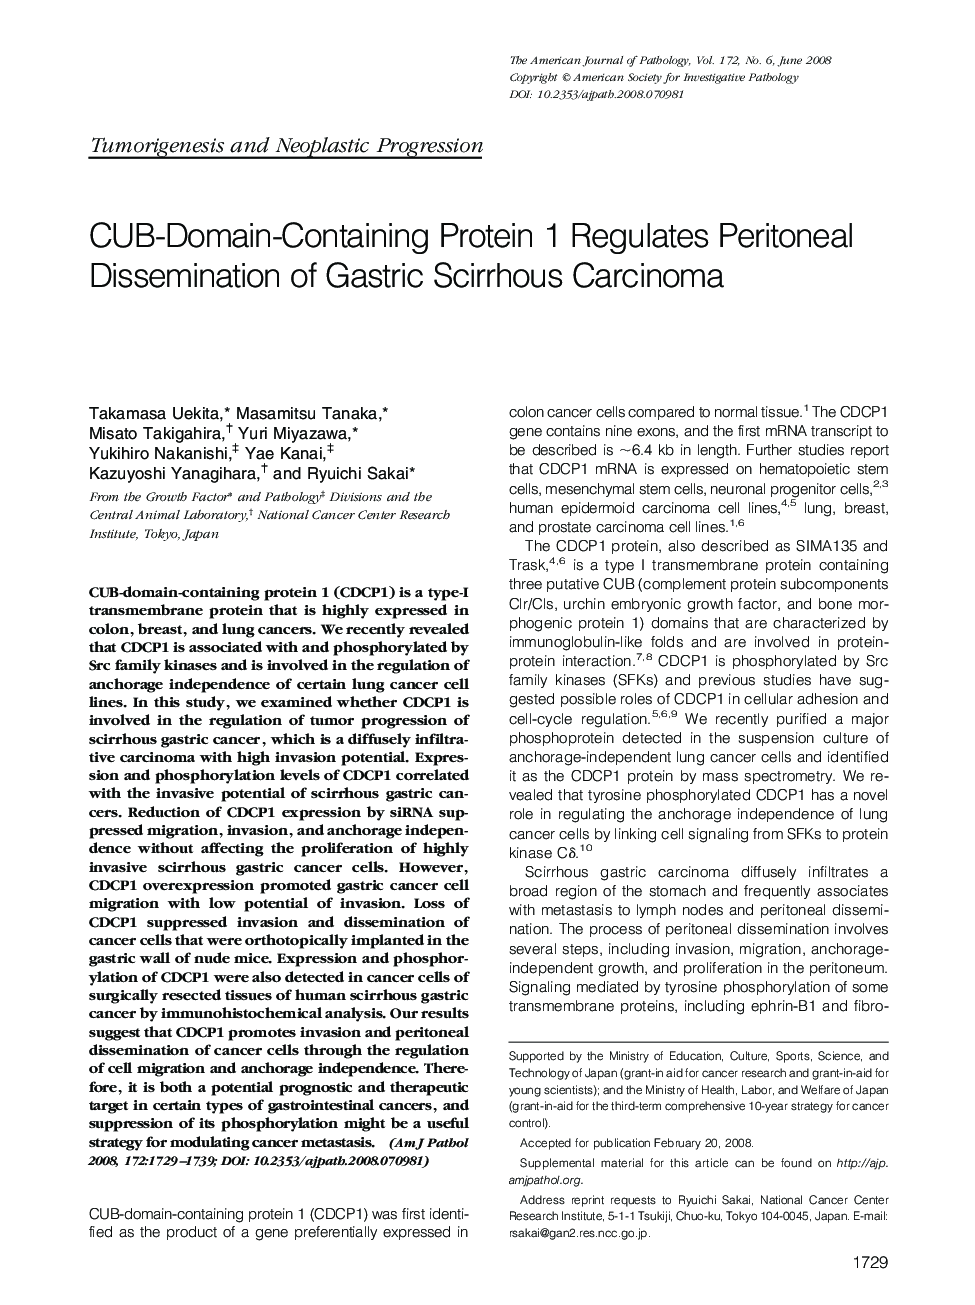 CUB-Domain-Containing Protein 1 Regulates Peritoneal Dissemination of Gastric Scirrhous Carcinoma